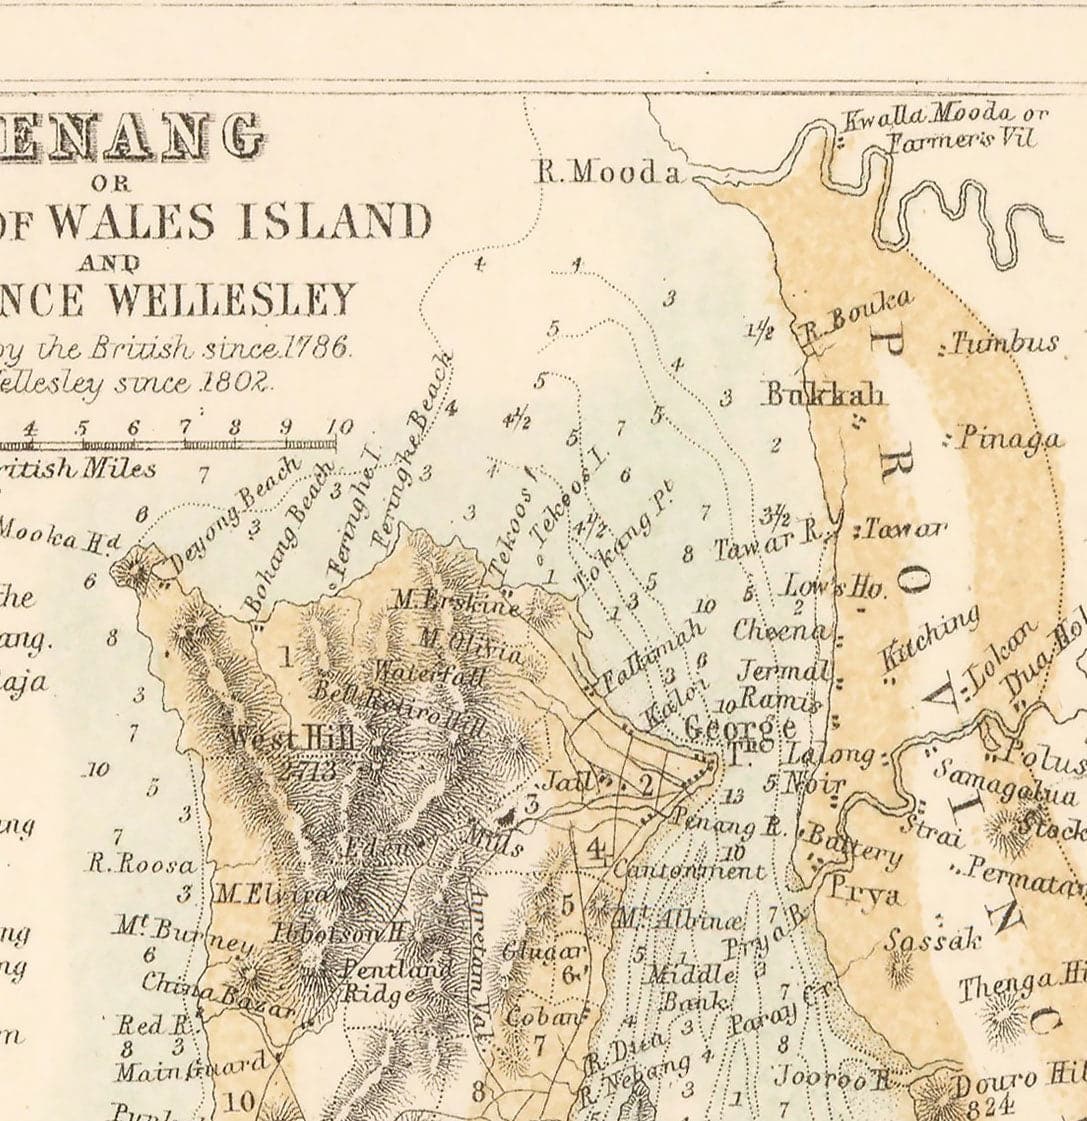 Alte Kolonialkarte der Halbinsel Malaysia, 1860 von Fullarton - Singapur, Penang, Malakka, Naning - Britische Siedlungen